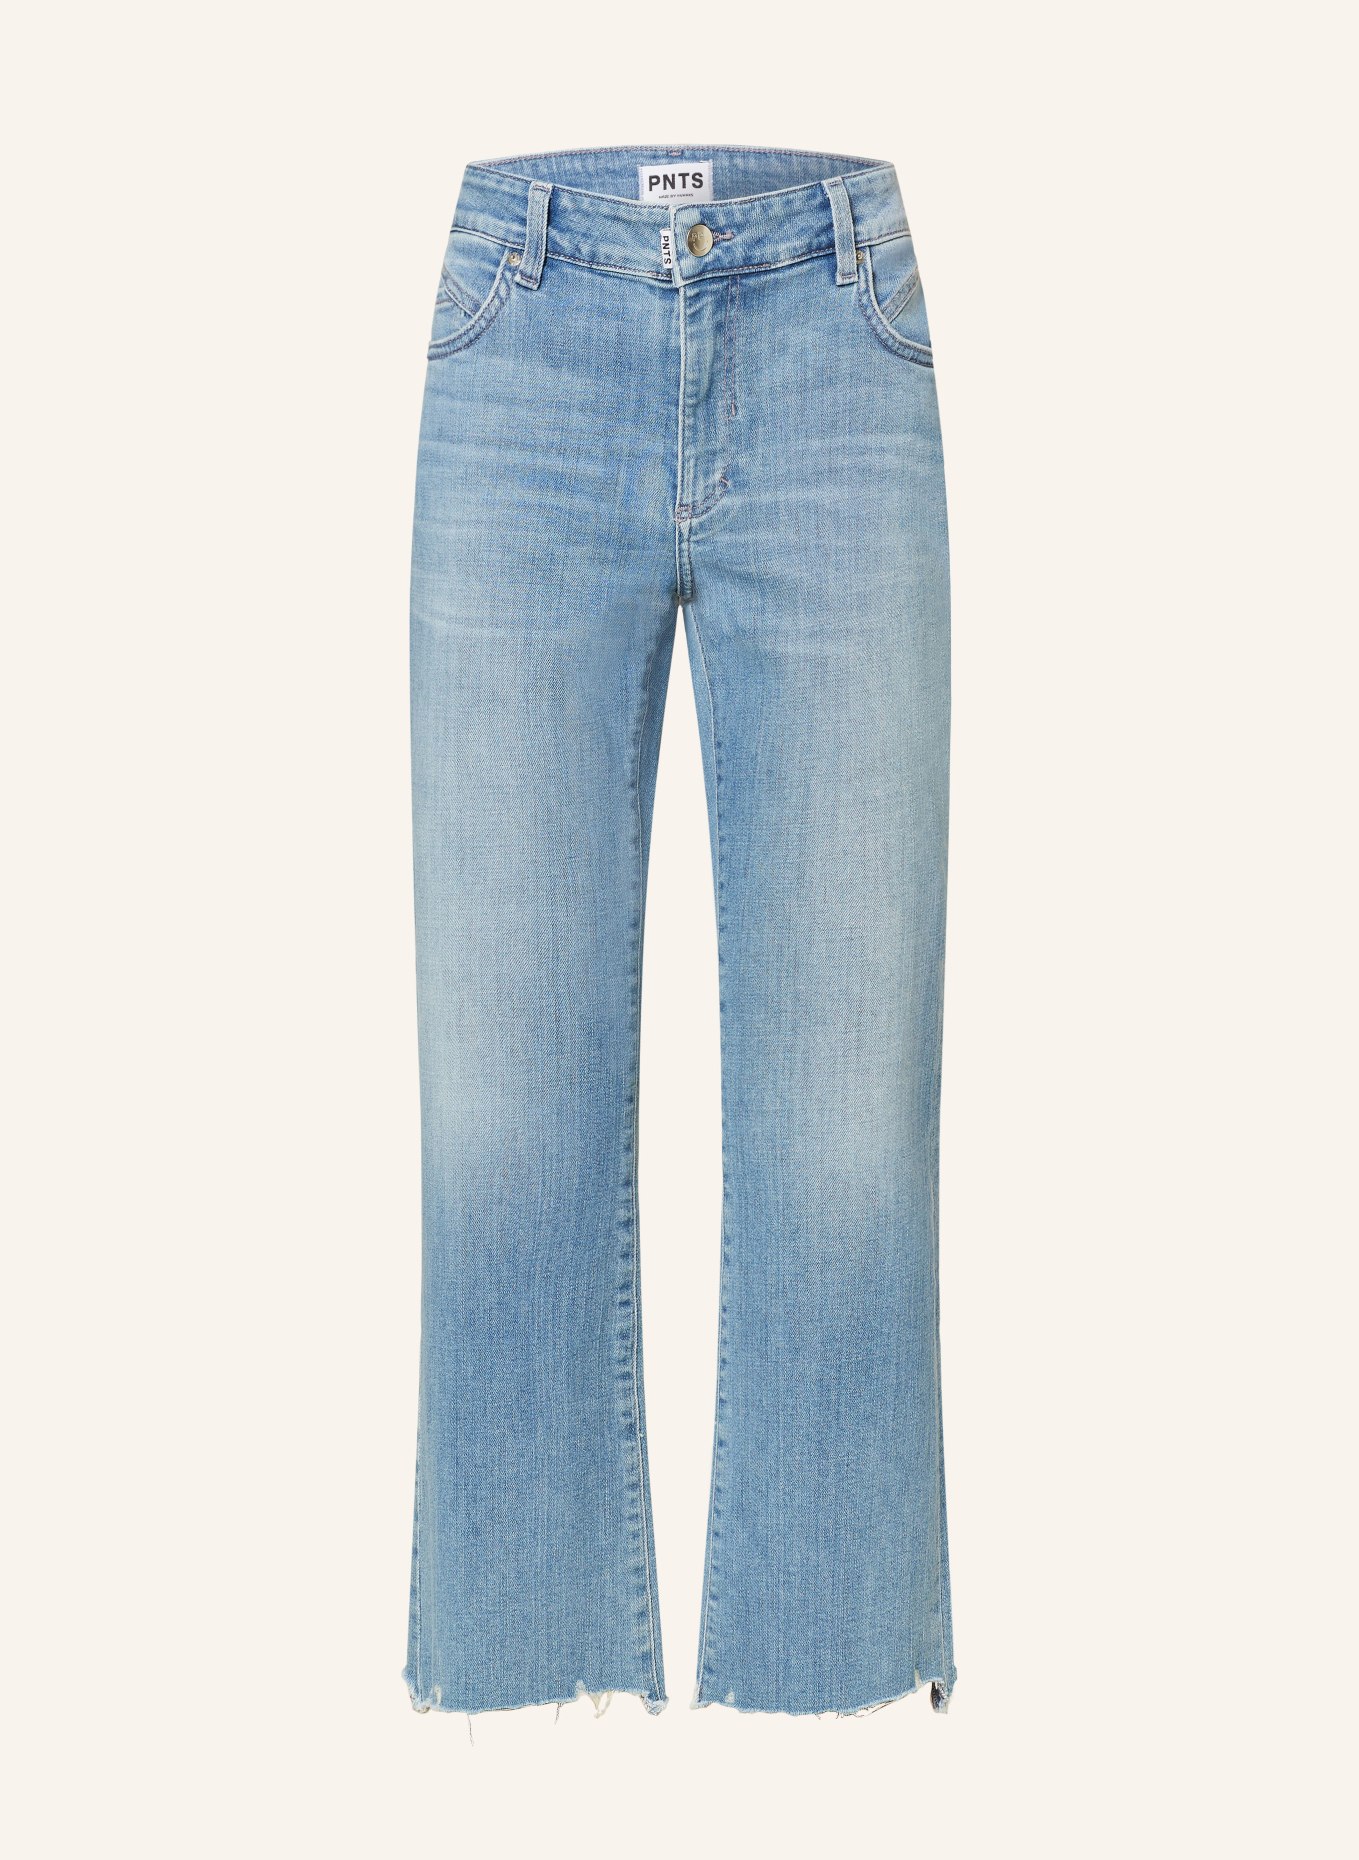 PNTS 7/8 jeans THE MINI B, Color: 27 vintage indigo (Image 1)